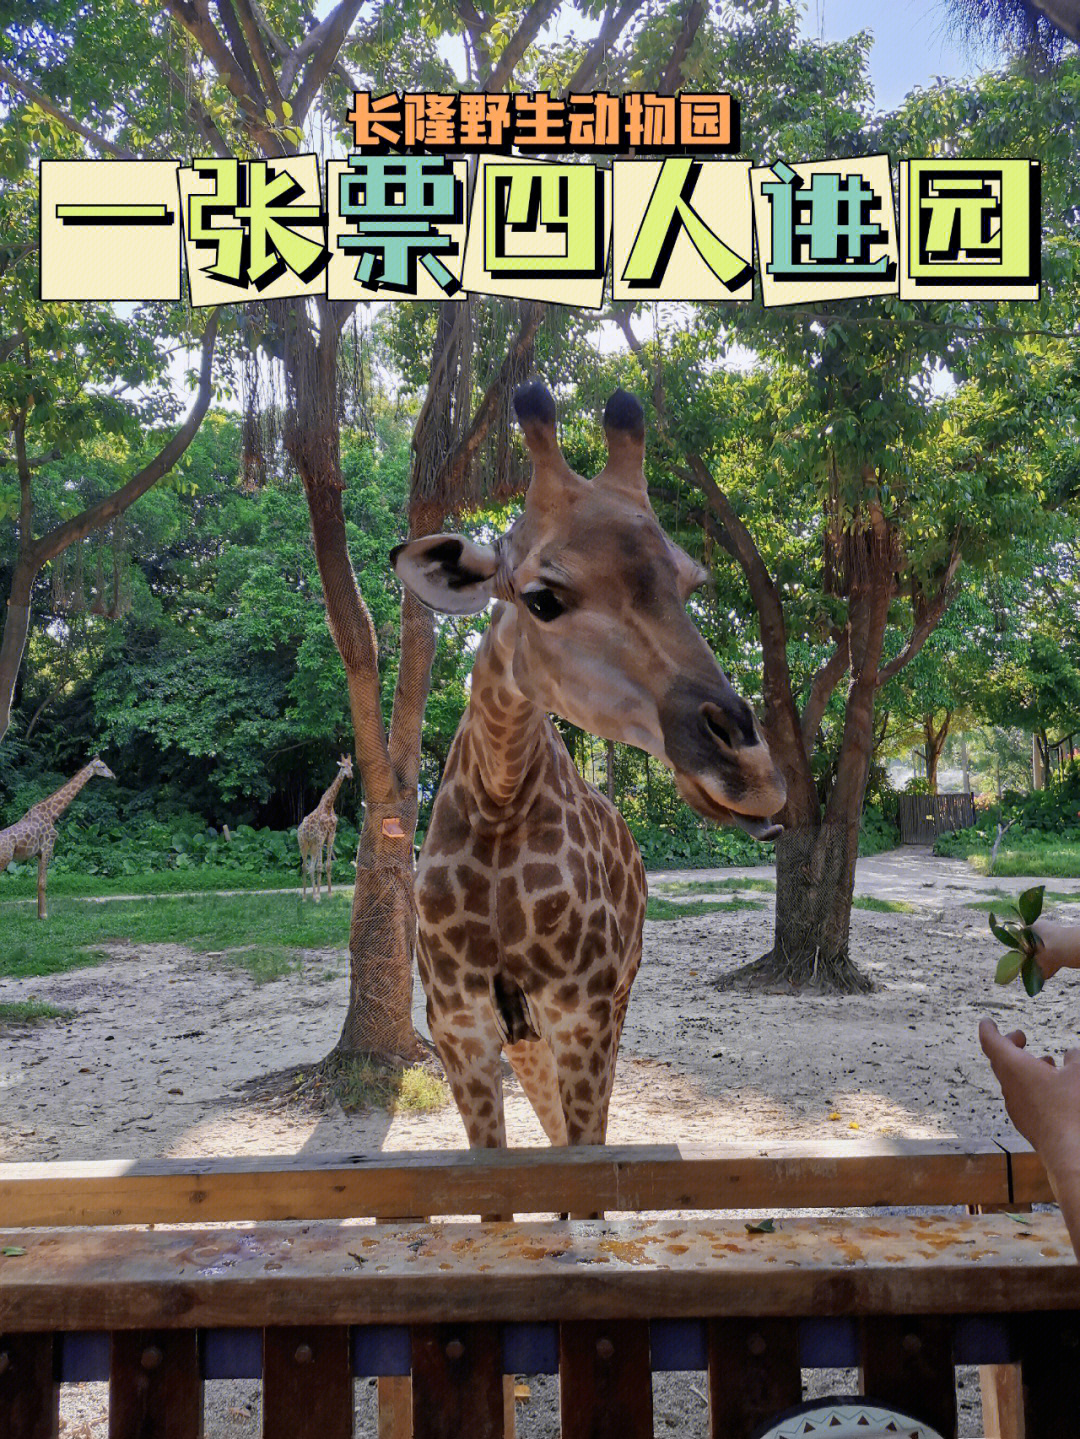 东莞野生动物园门票图片